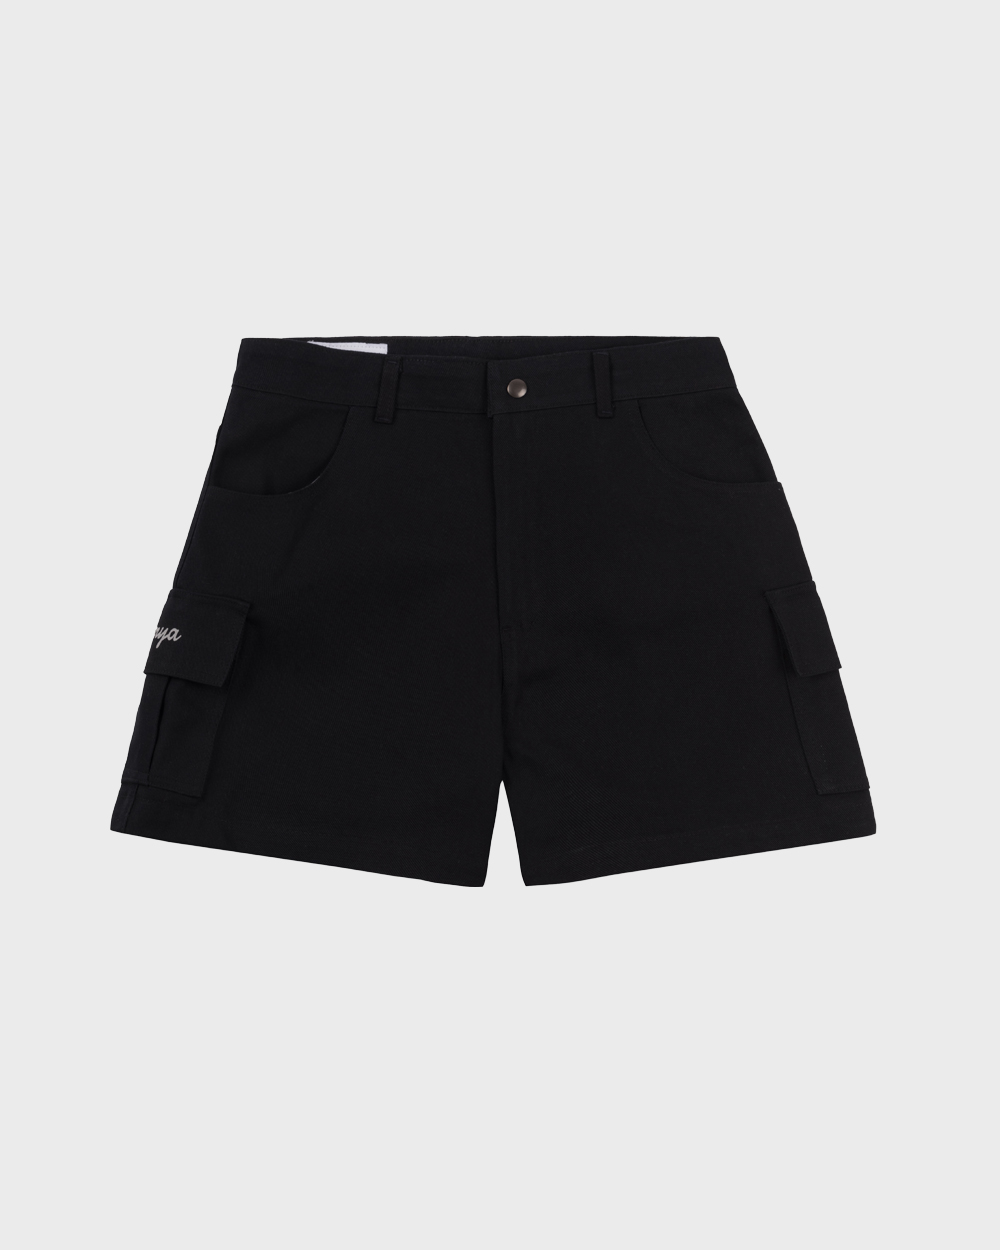 OSTRYA Botwood Cargo Shorts (Black)